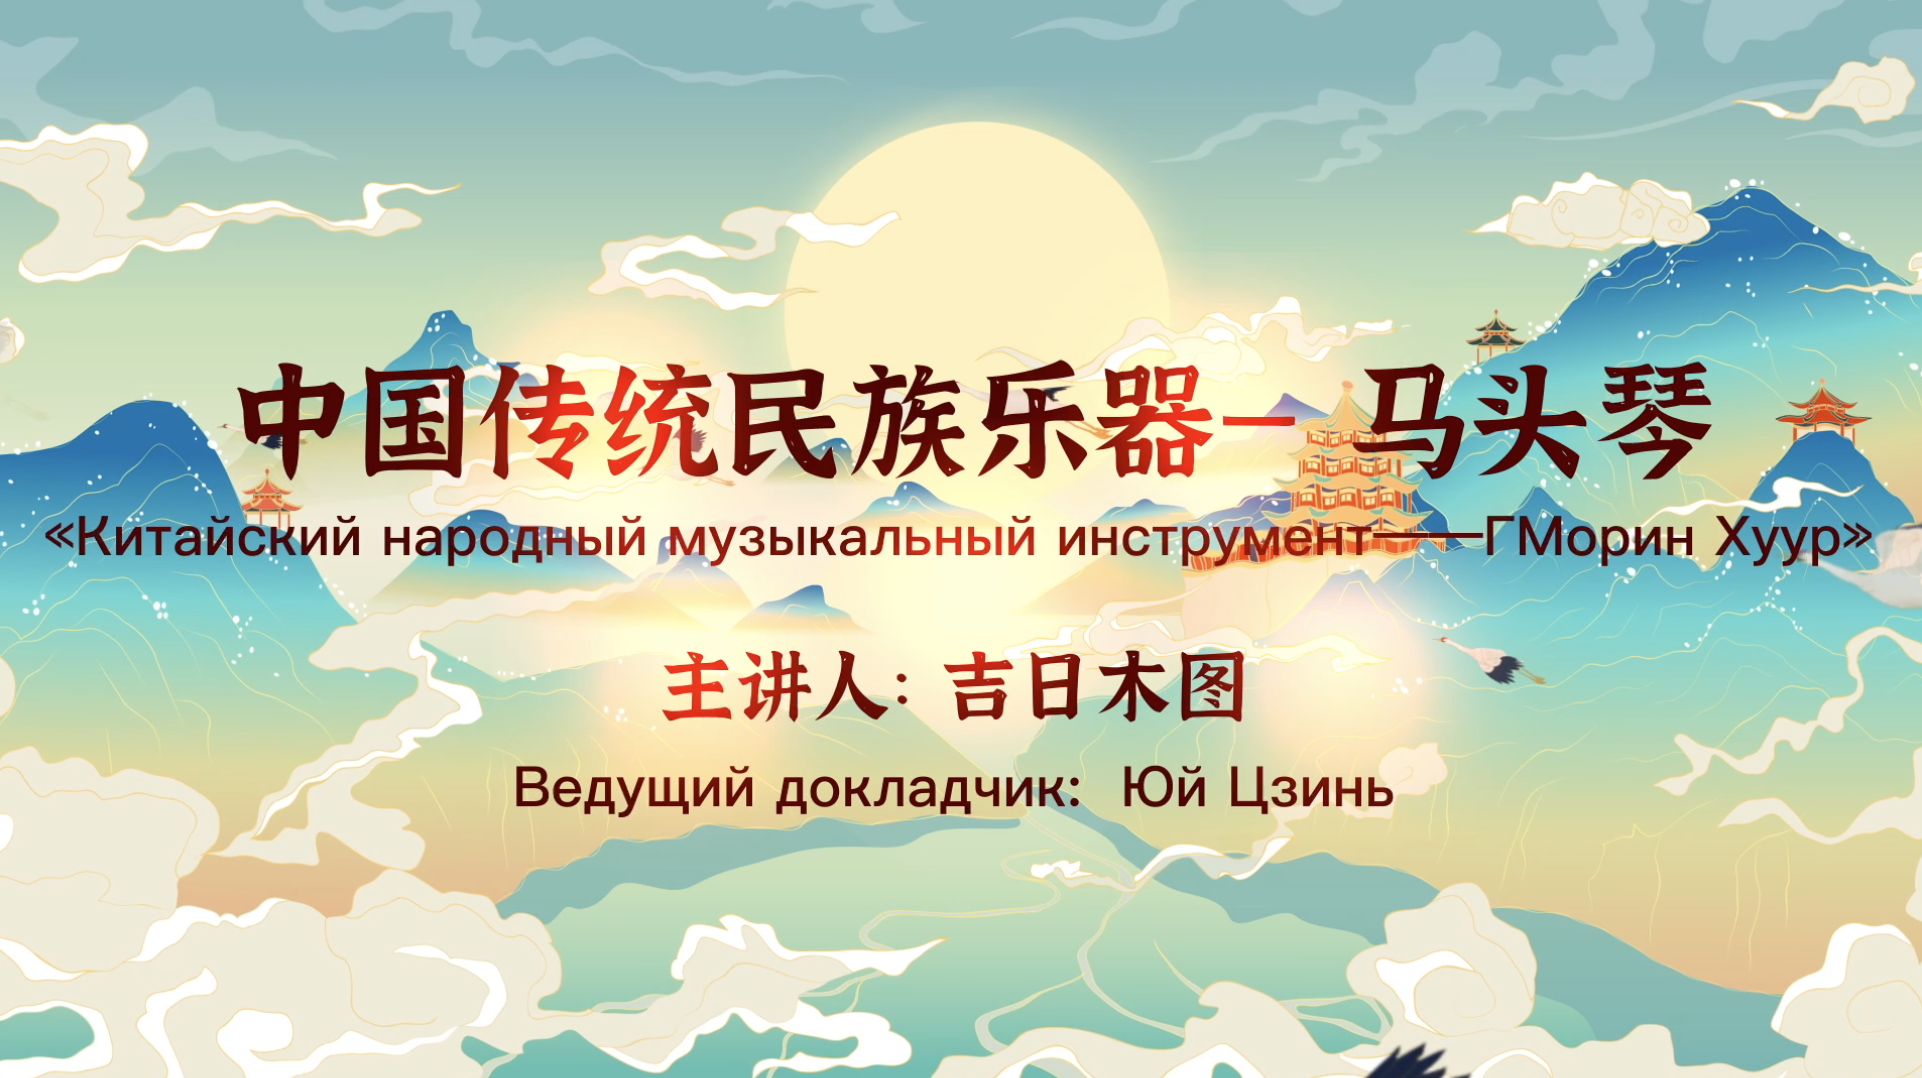 Национальные музыкальные инструменты Внутренней Монголии -  Моринхур